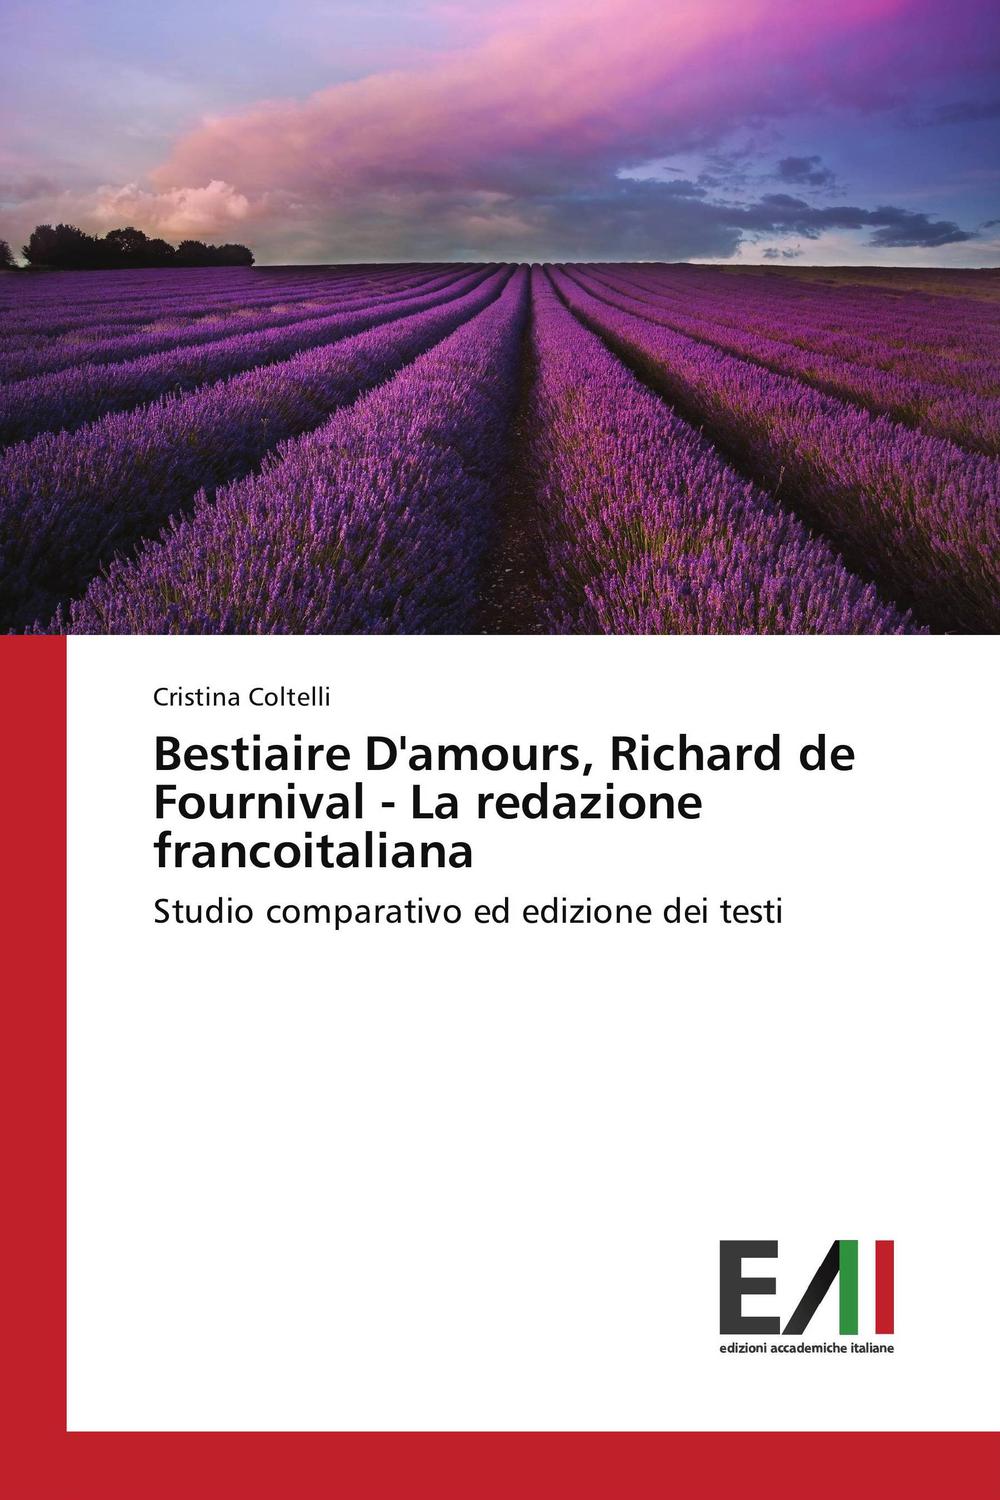 Bestiaire D'amours, Richard de Fournival - La redazione francoitaliana - Cristina Coltelli